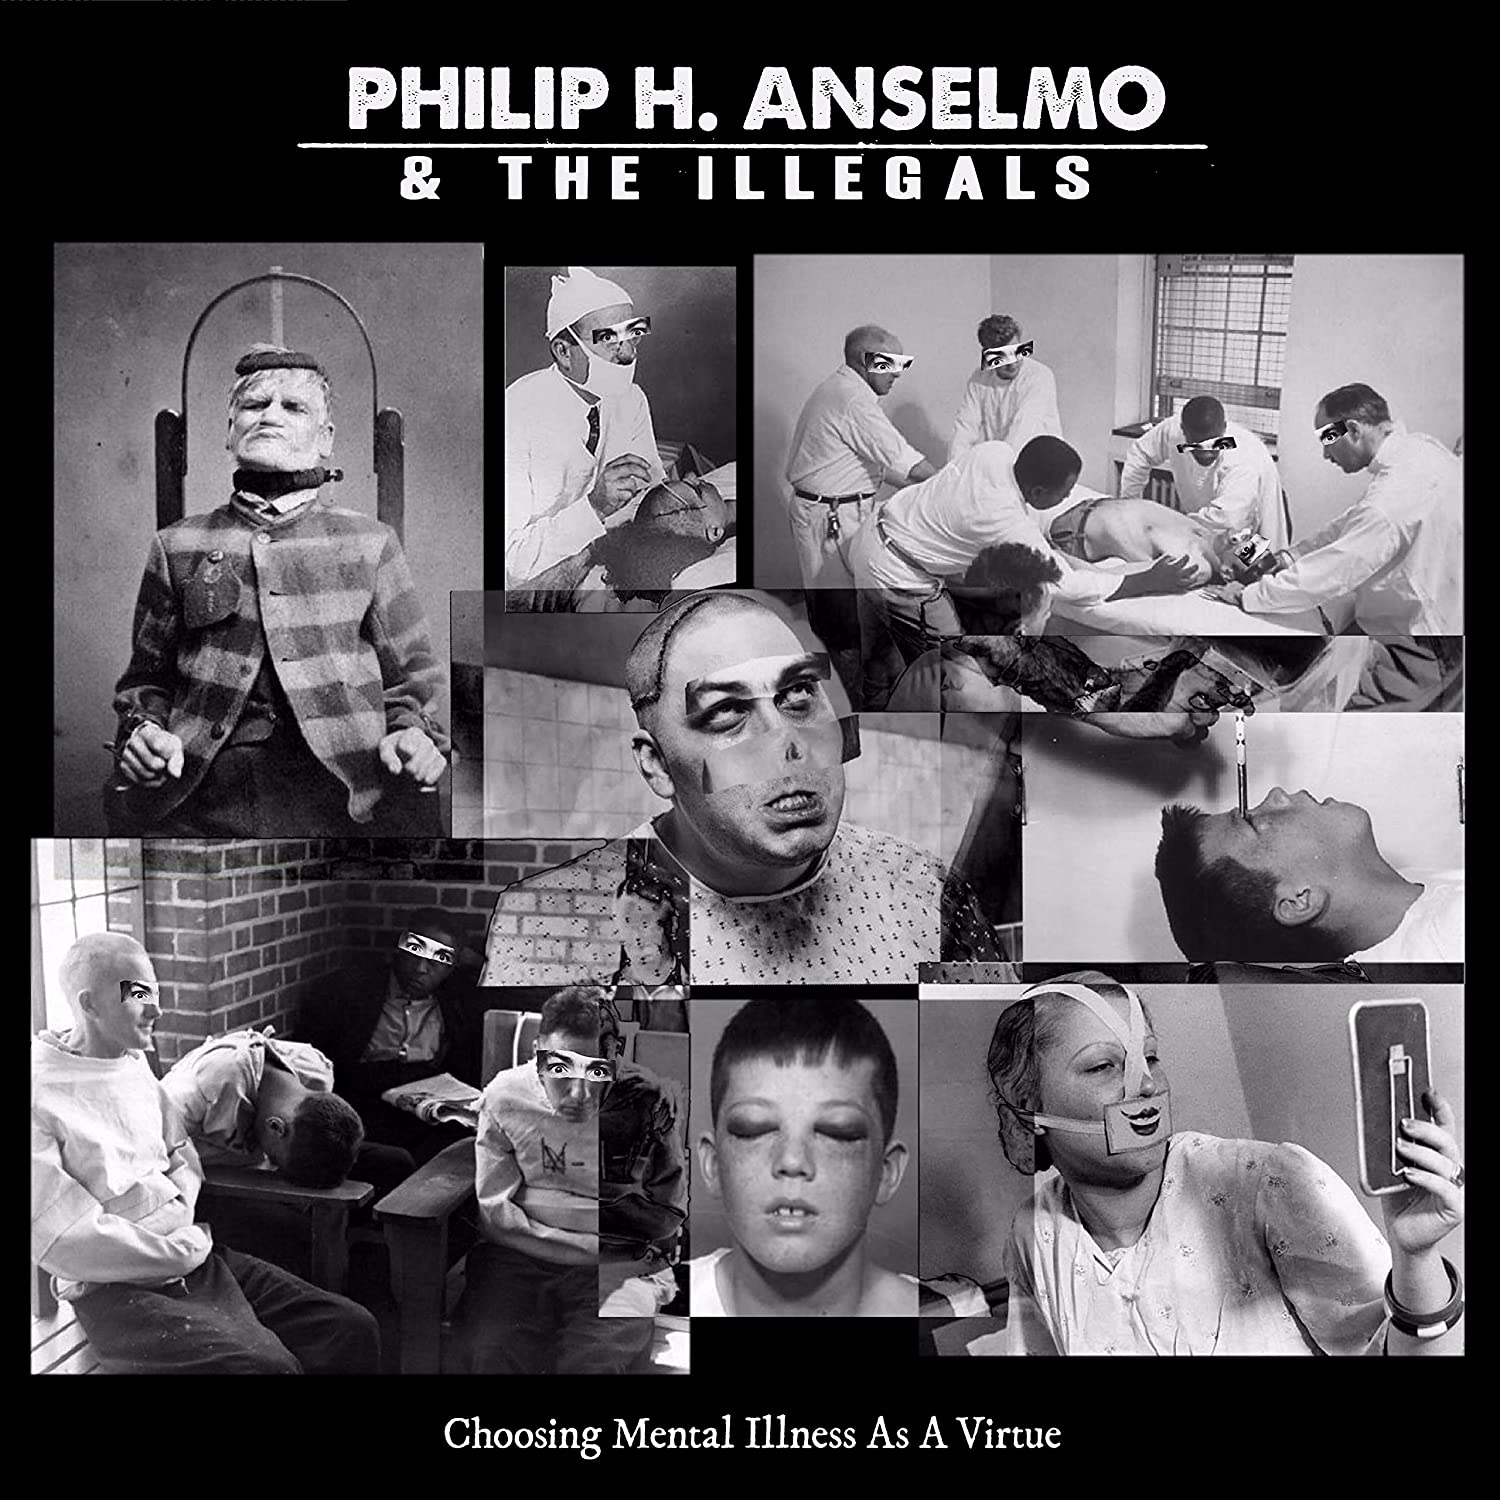 PHILIP H ANSELMO & THE ILLEGALS 'CHOOSING MENTAL ILLNESS AS A VIRTUE' LP